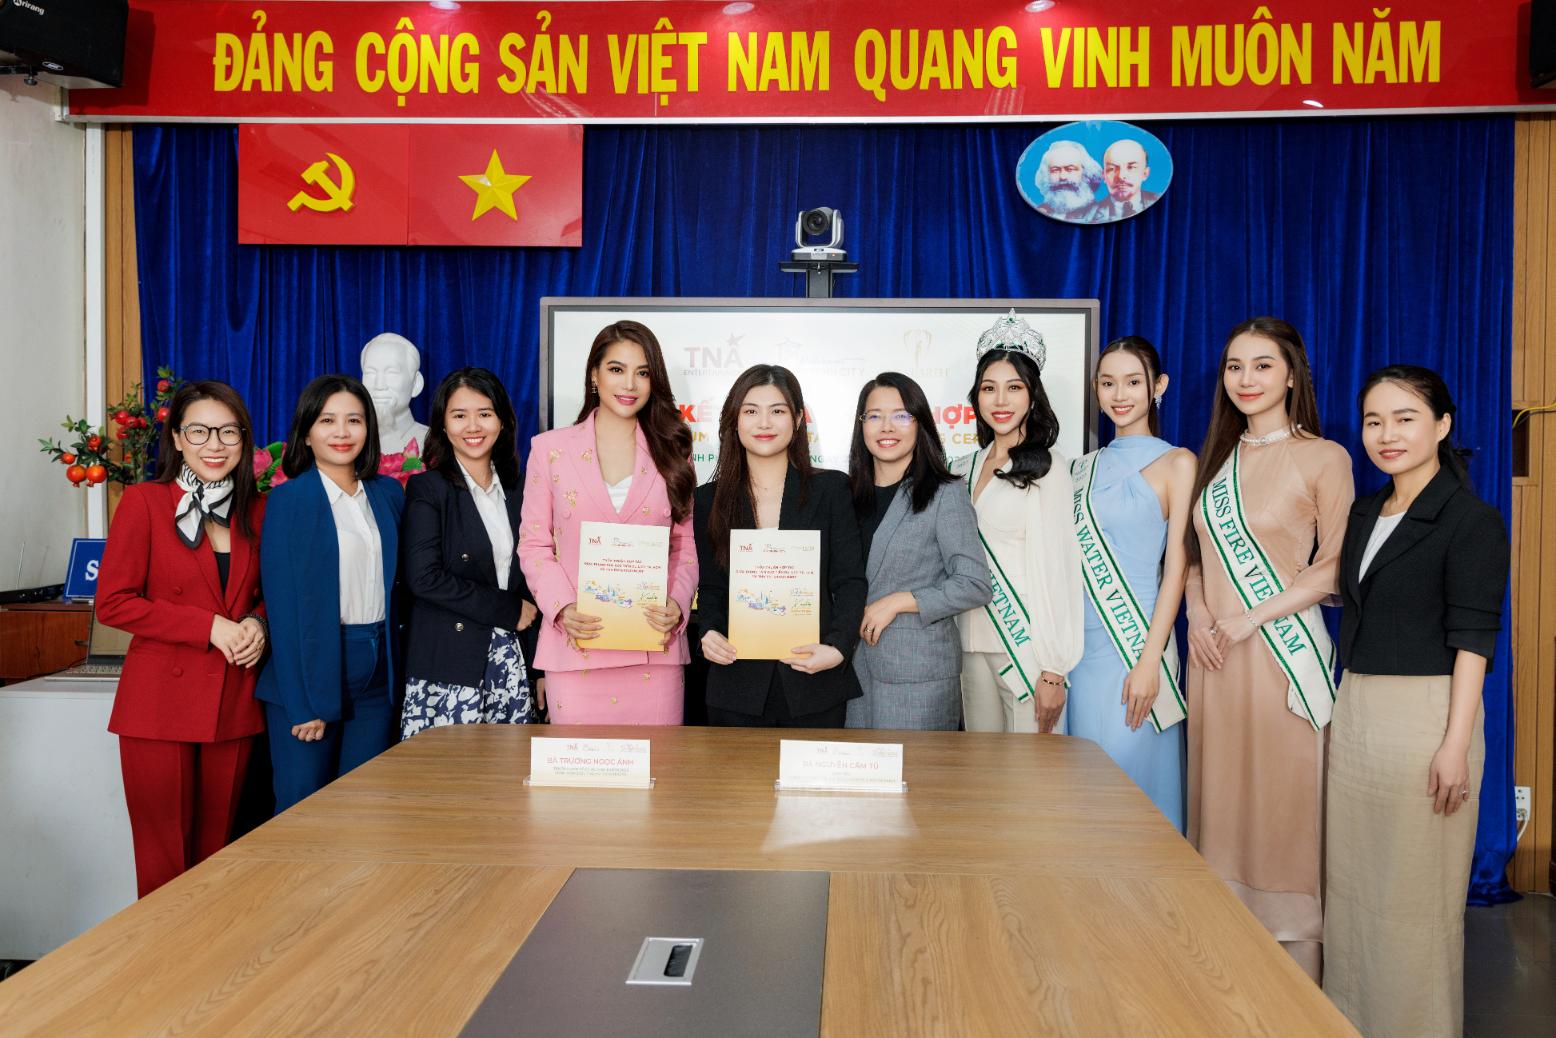 Trương Ngọc Ánh 5 Miss Earth 2023 đồng hành cùng Tuần lễ Du lịch TP. Hồ Chí Minh